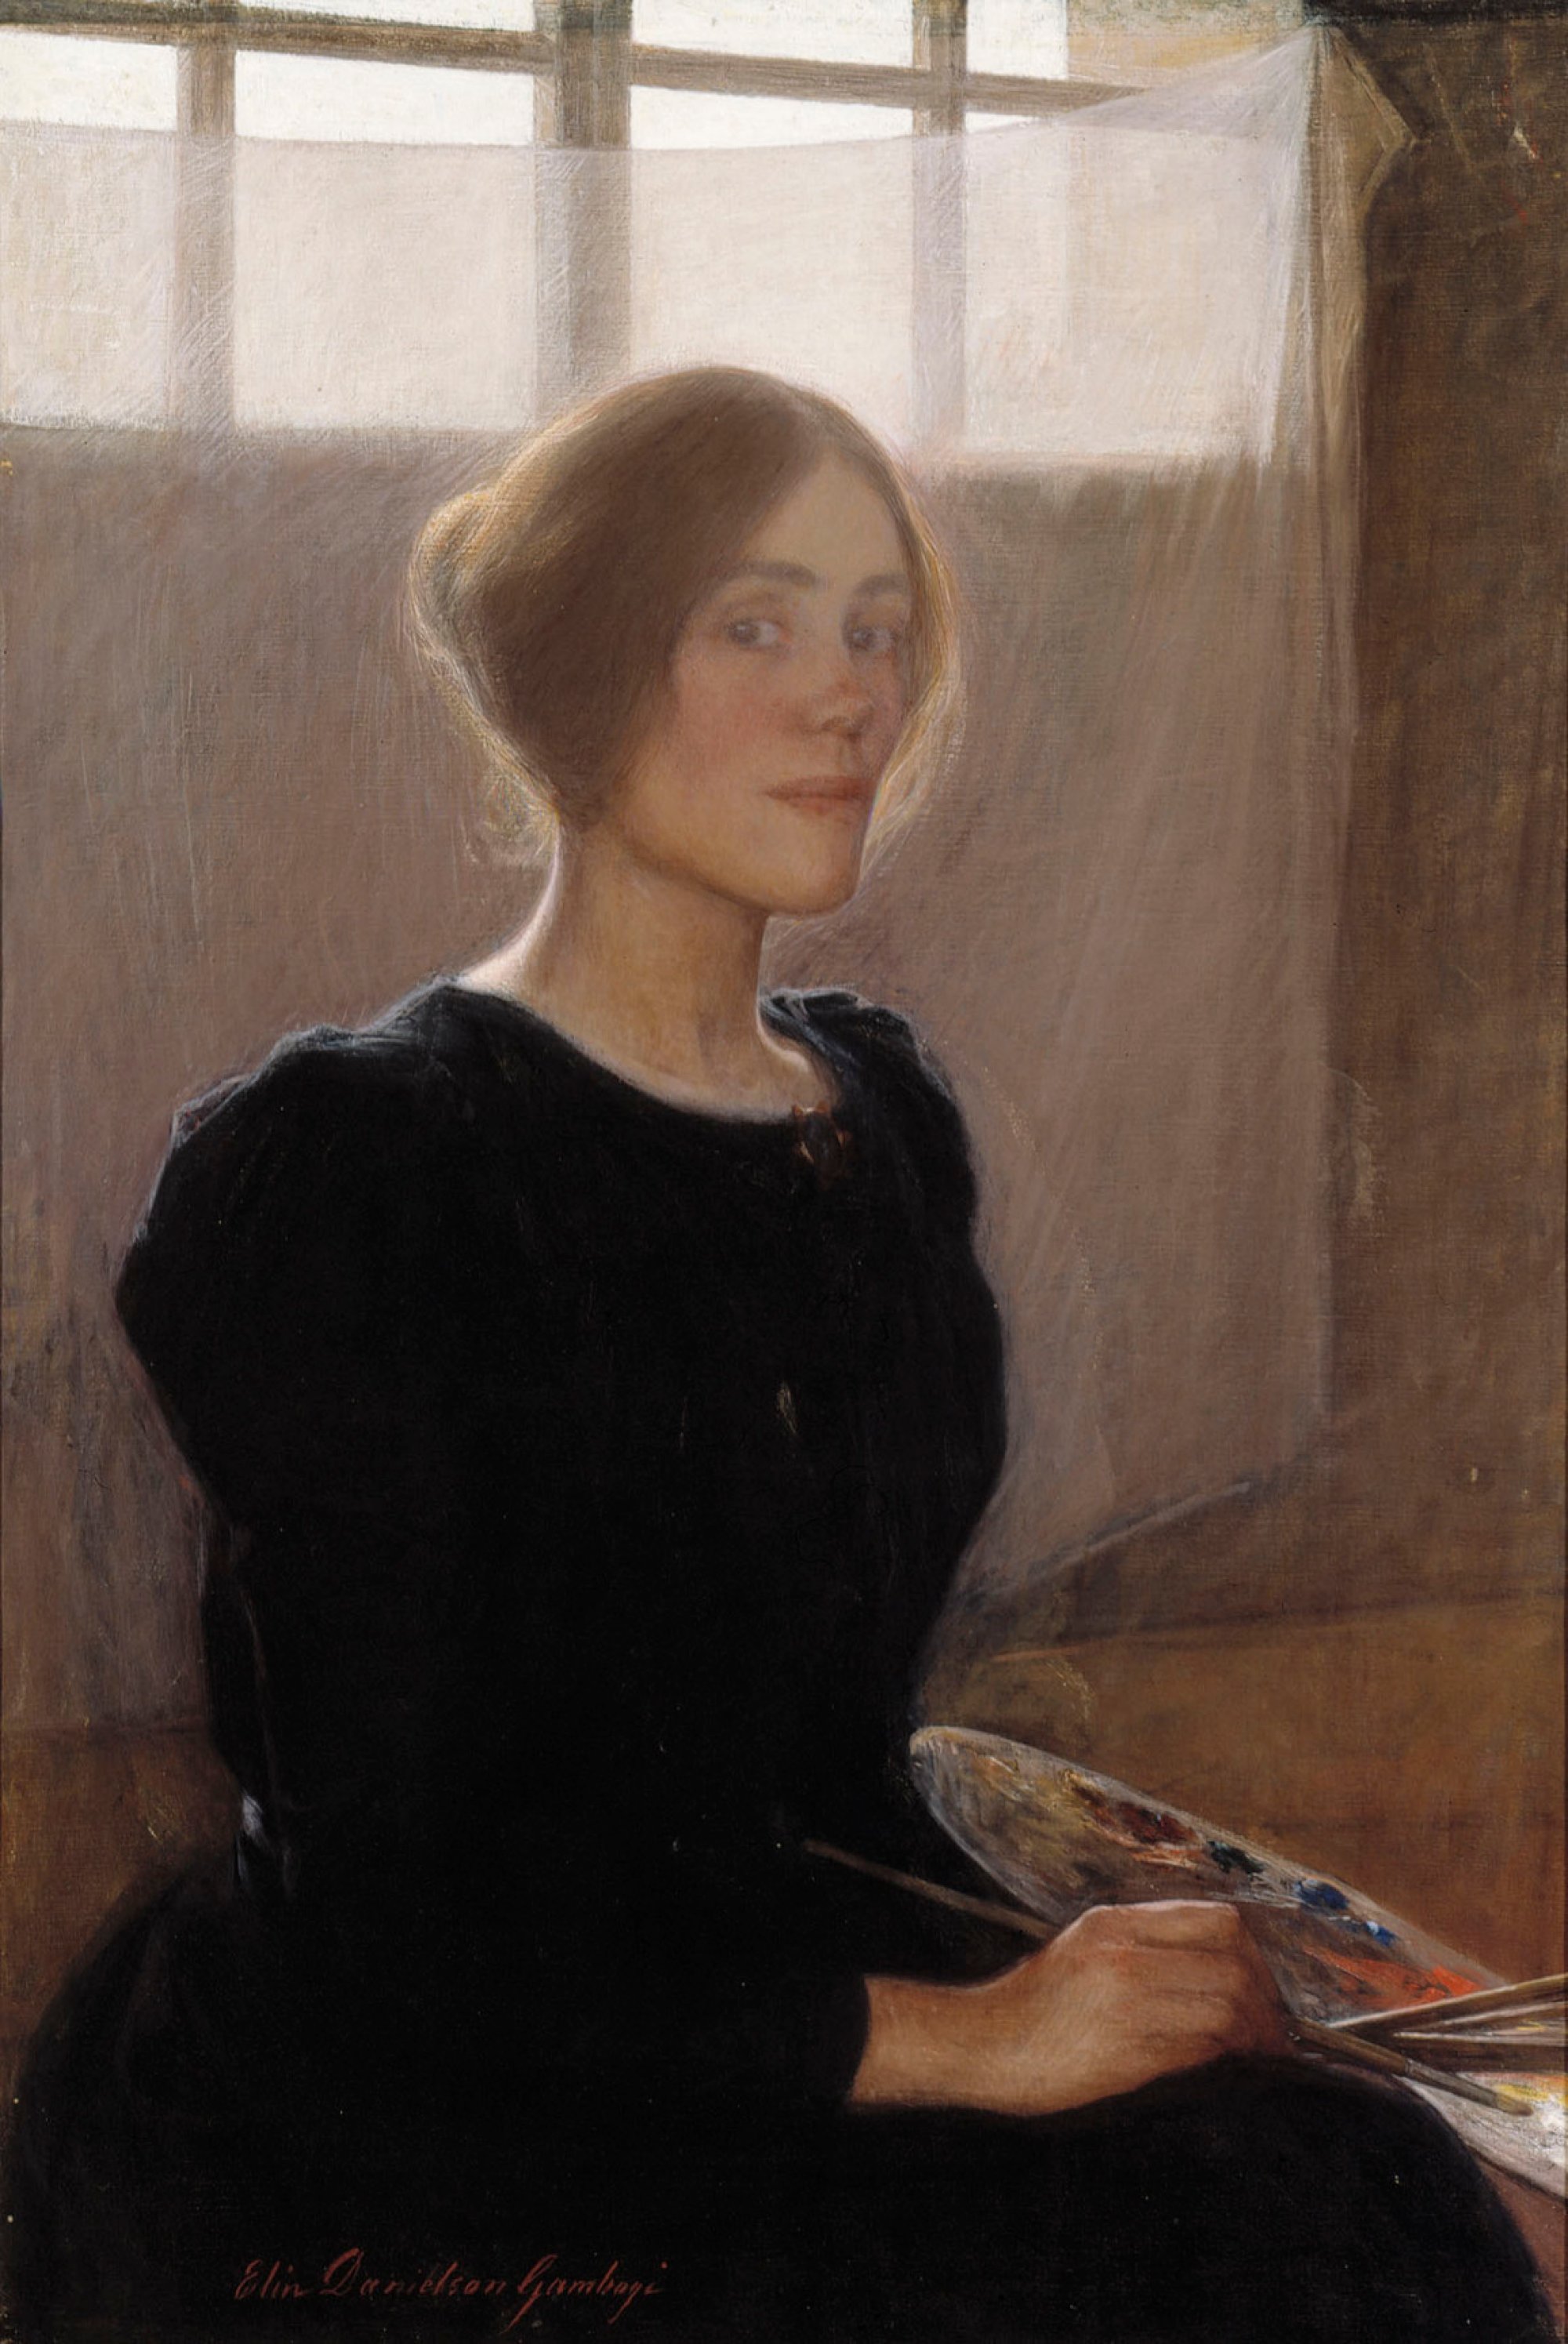 Self-Portrait by Elin Danielson-Gambogi - 1900 - 96 x 65,50 cm Finnish National Gallery